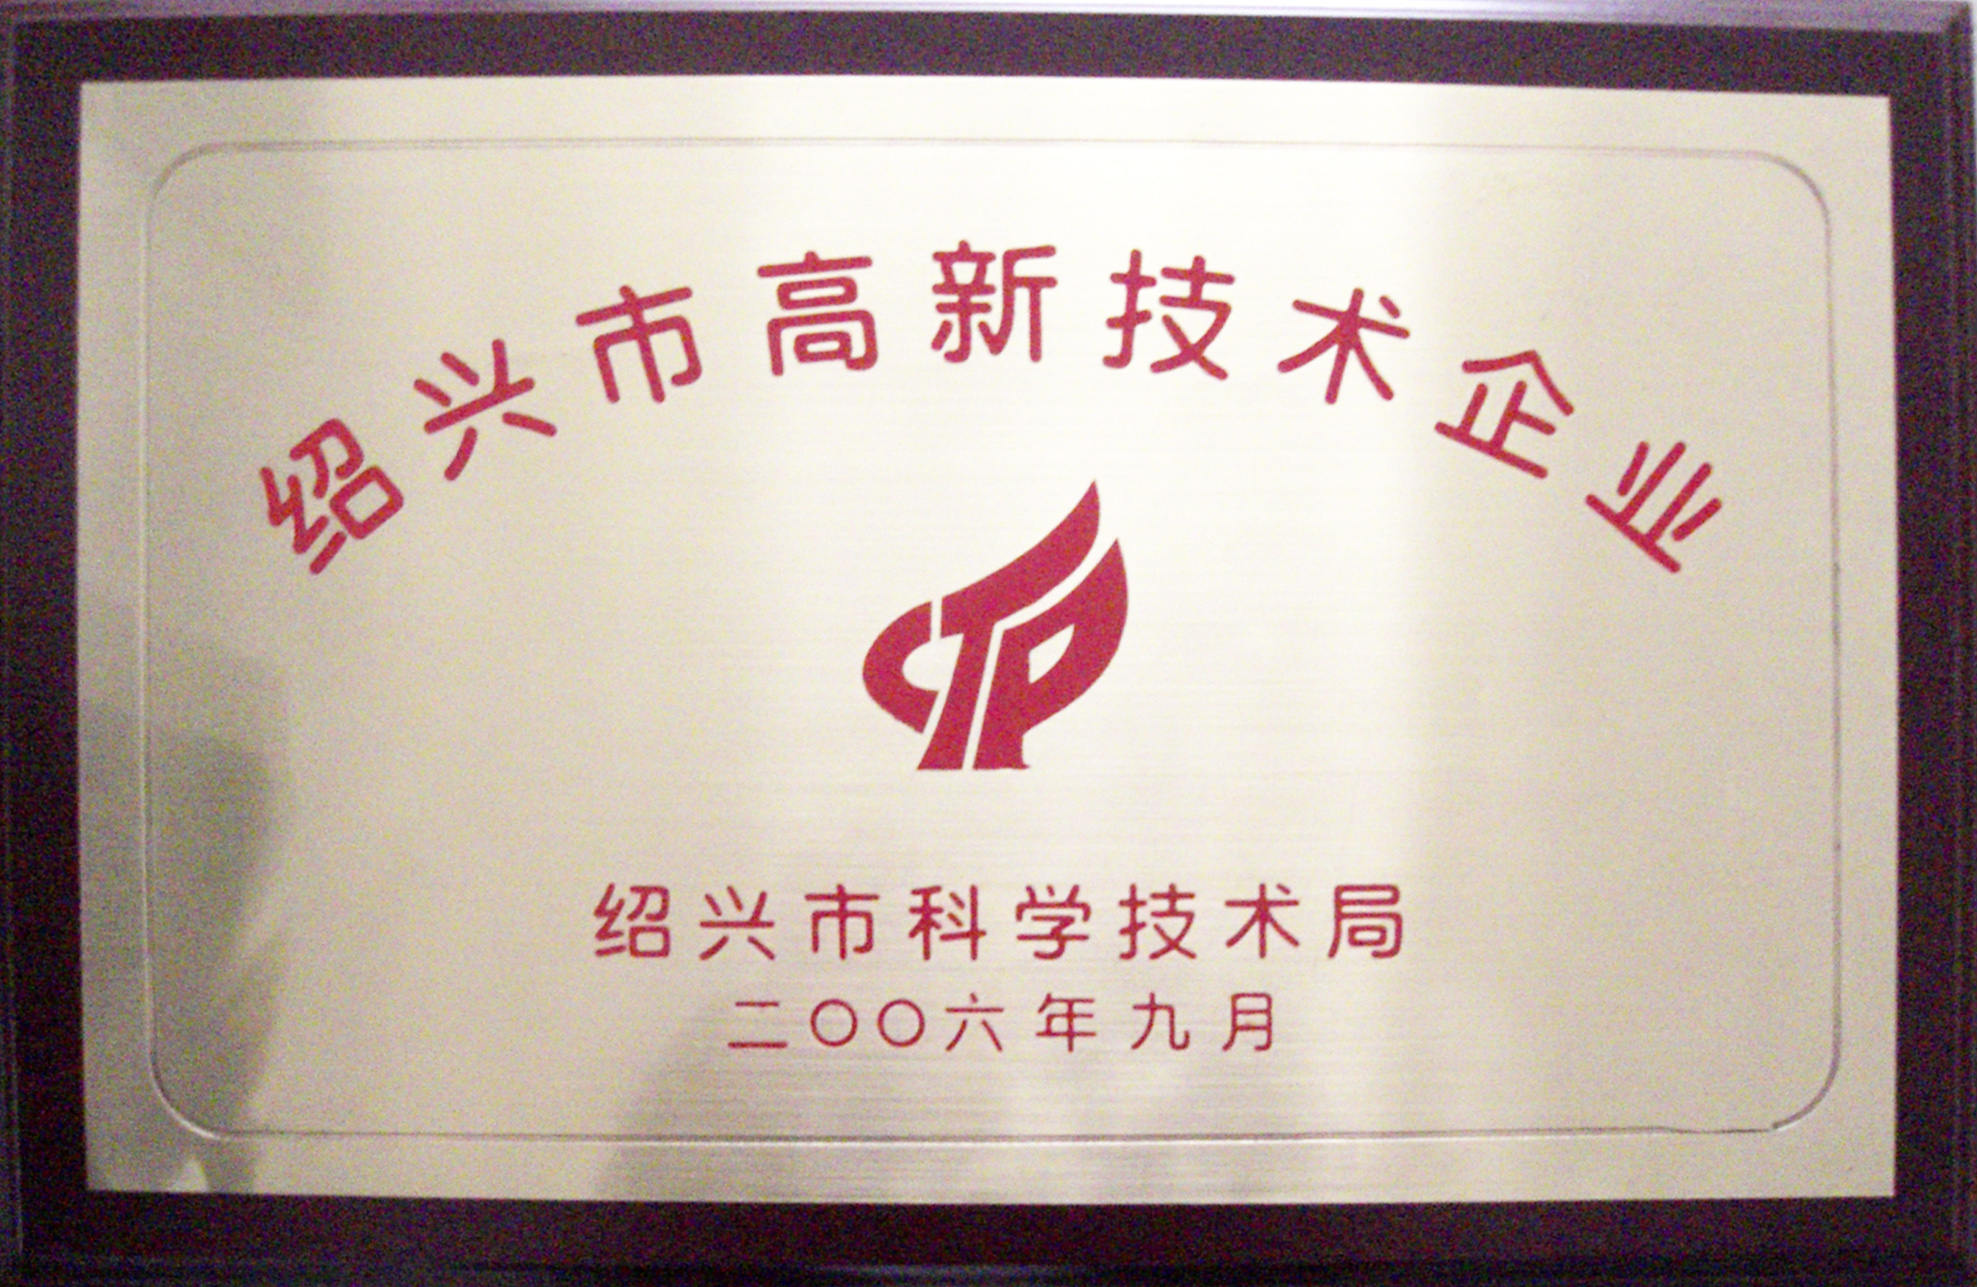 2006年绍兴市高新技术企业.jpg